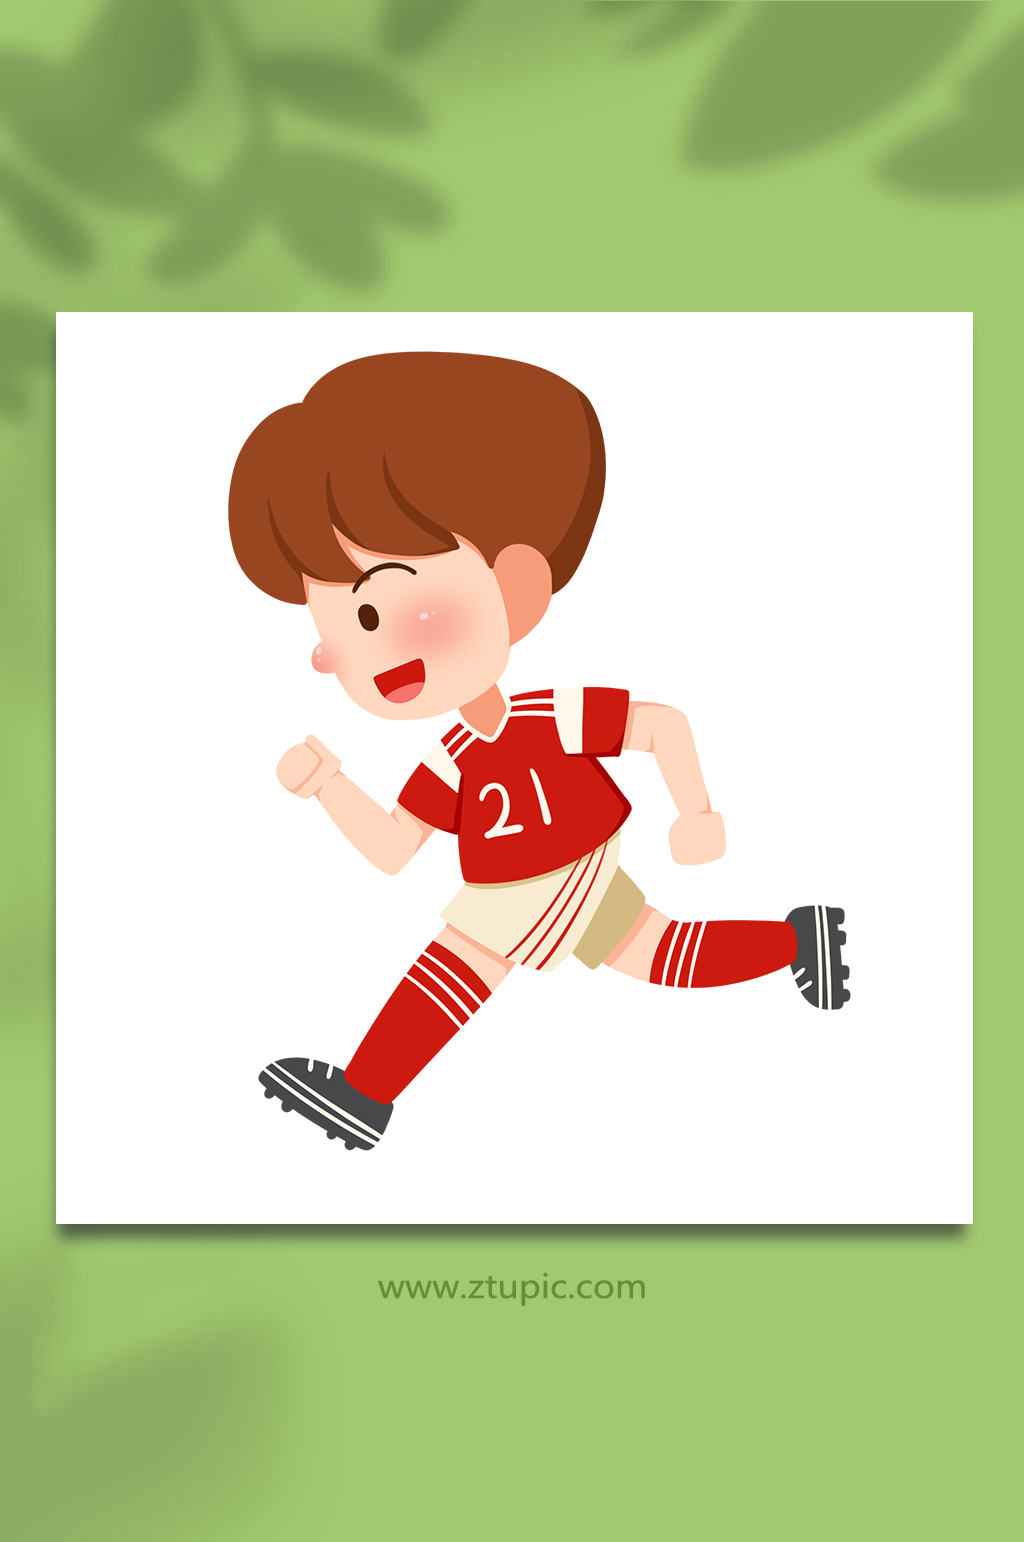 跑步卡通世界杯足球运动员元素插画